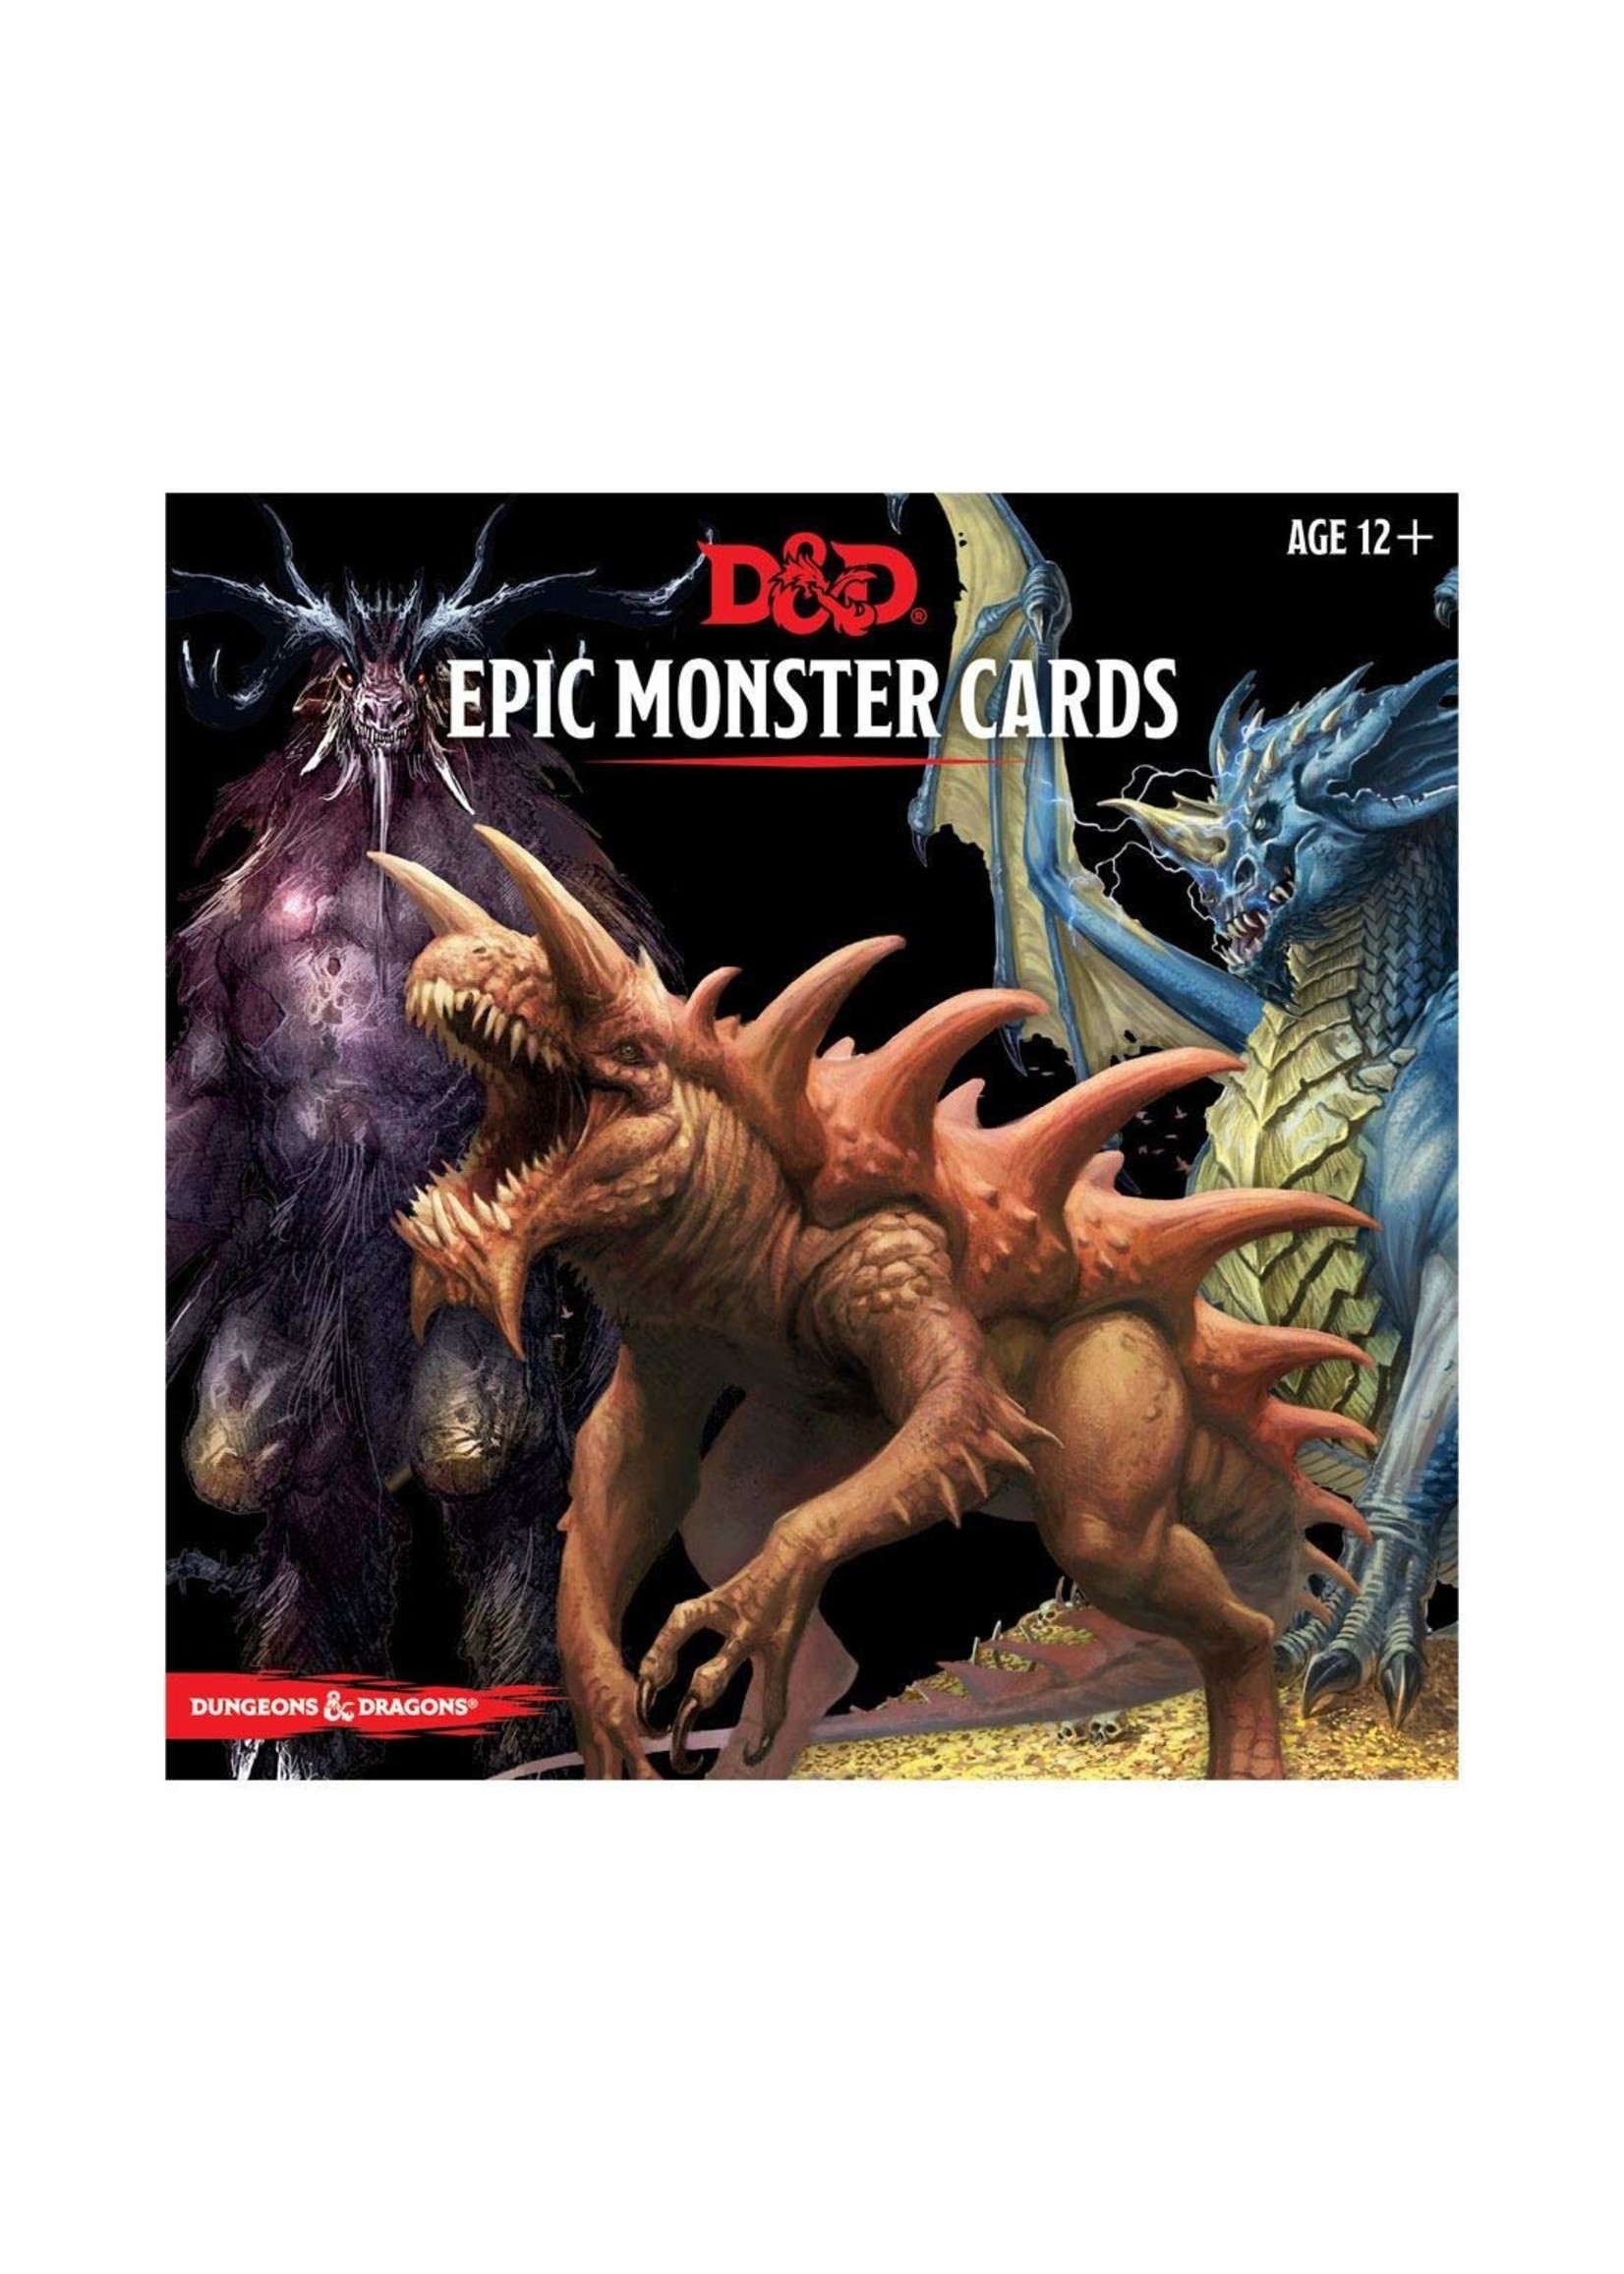 Monstercard